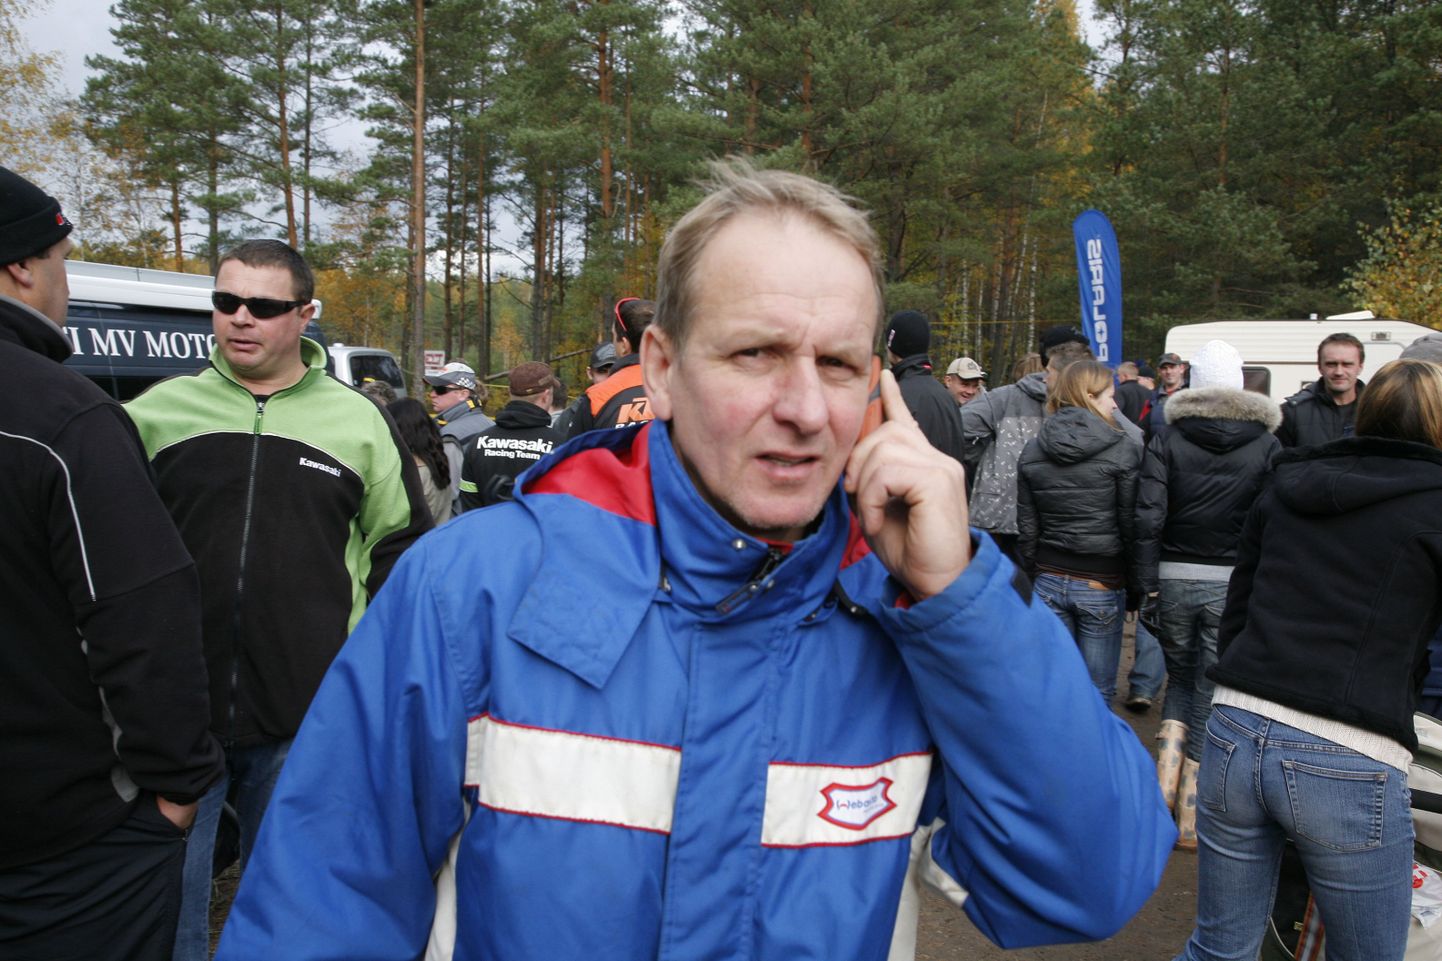 Paikuse klubi võidusõitja Toivo Nikopensius (esiplaanil) ületas finišijoone teisena.